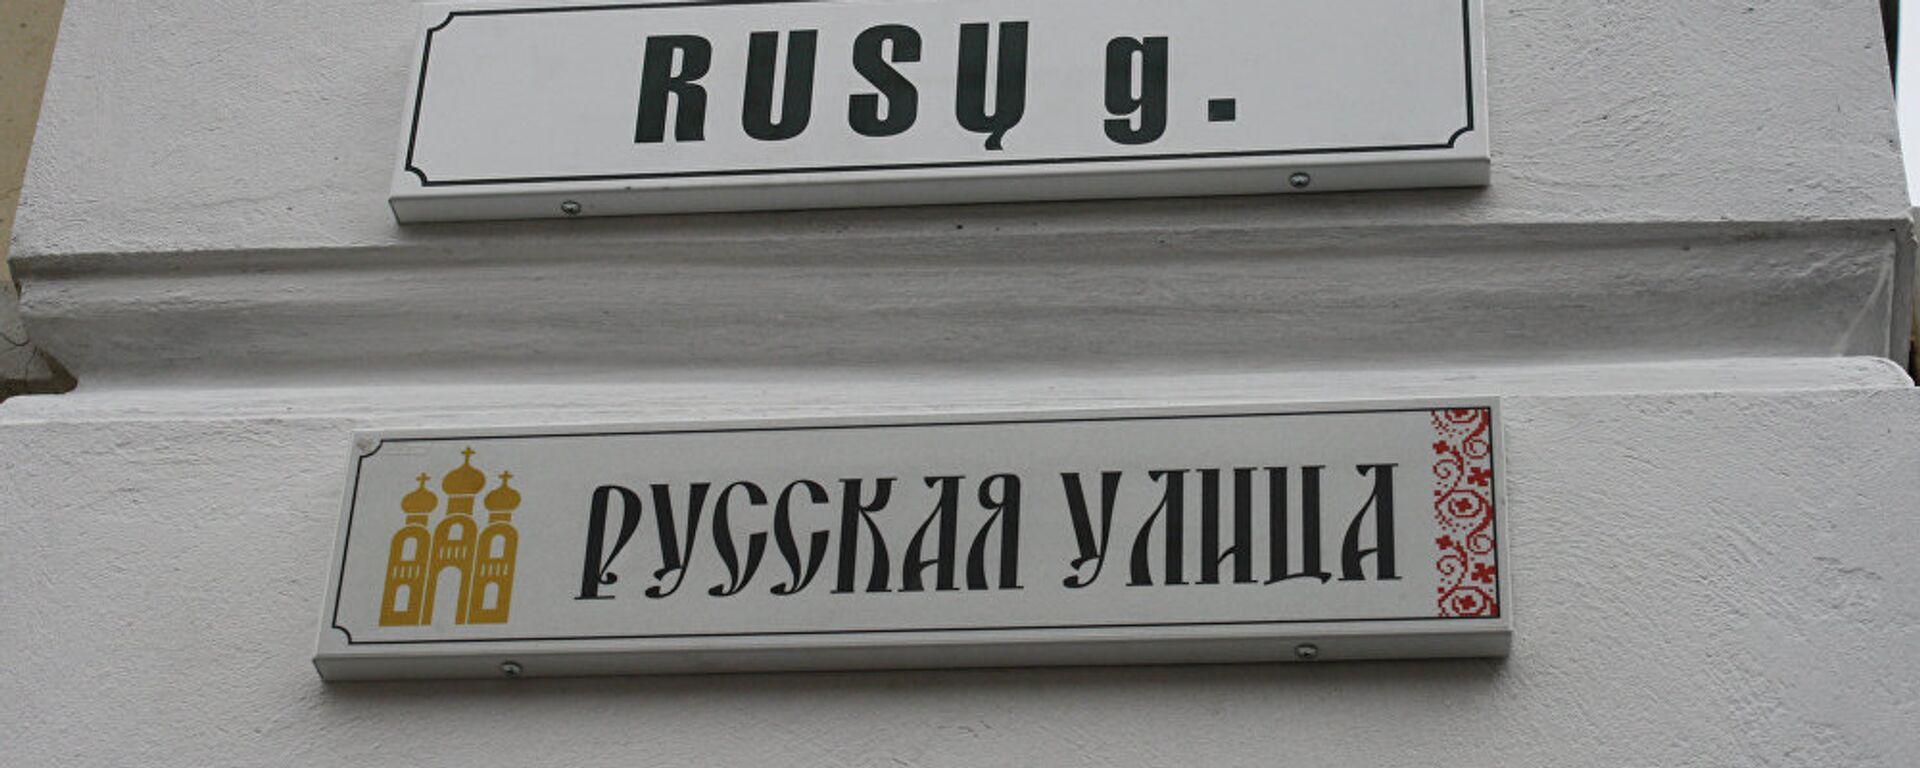 Табличка Русская улица в Вильнюсе - Sputnik Латвия, 1920, 15.02.2017